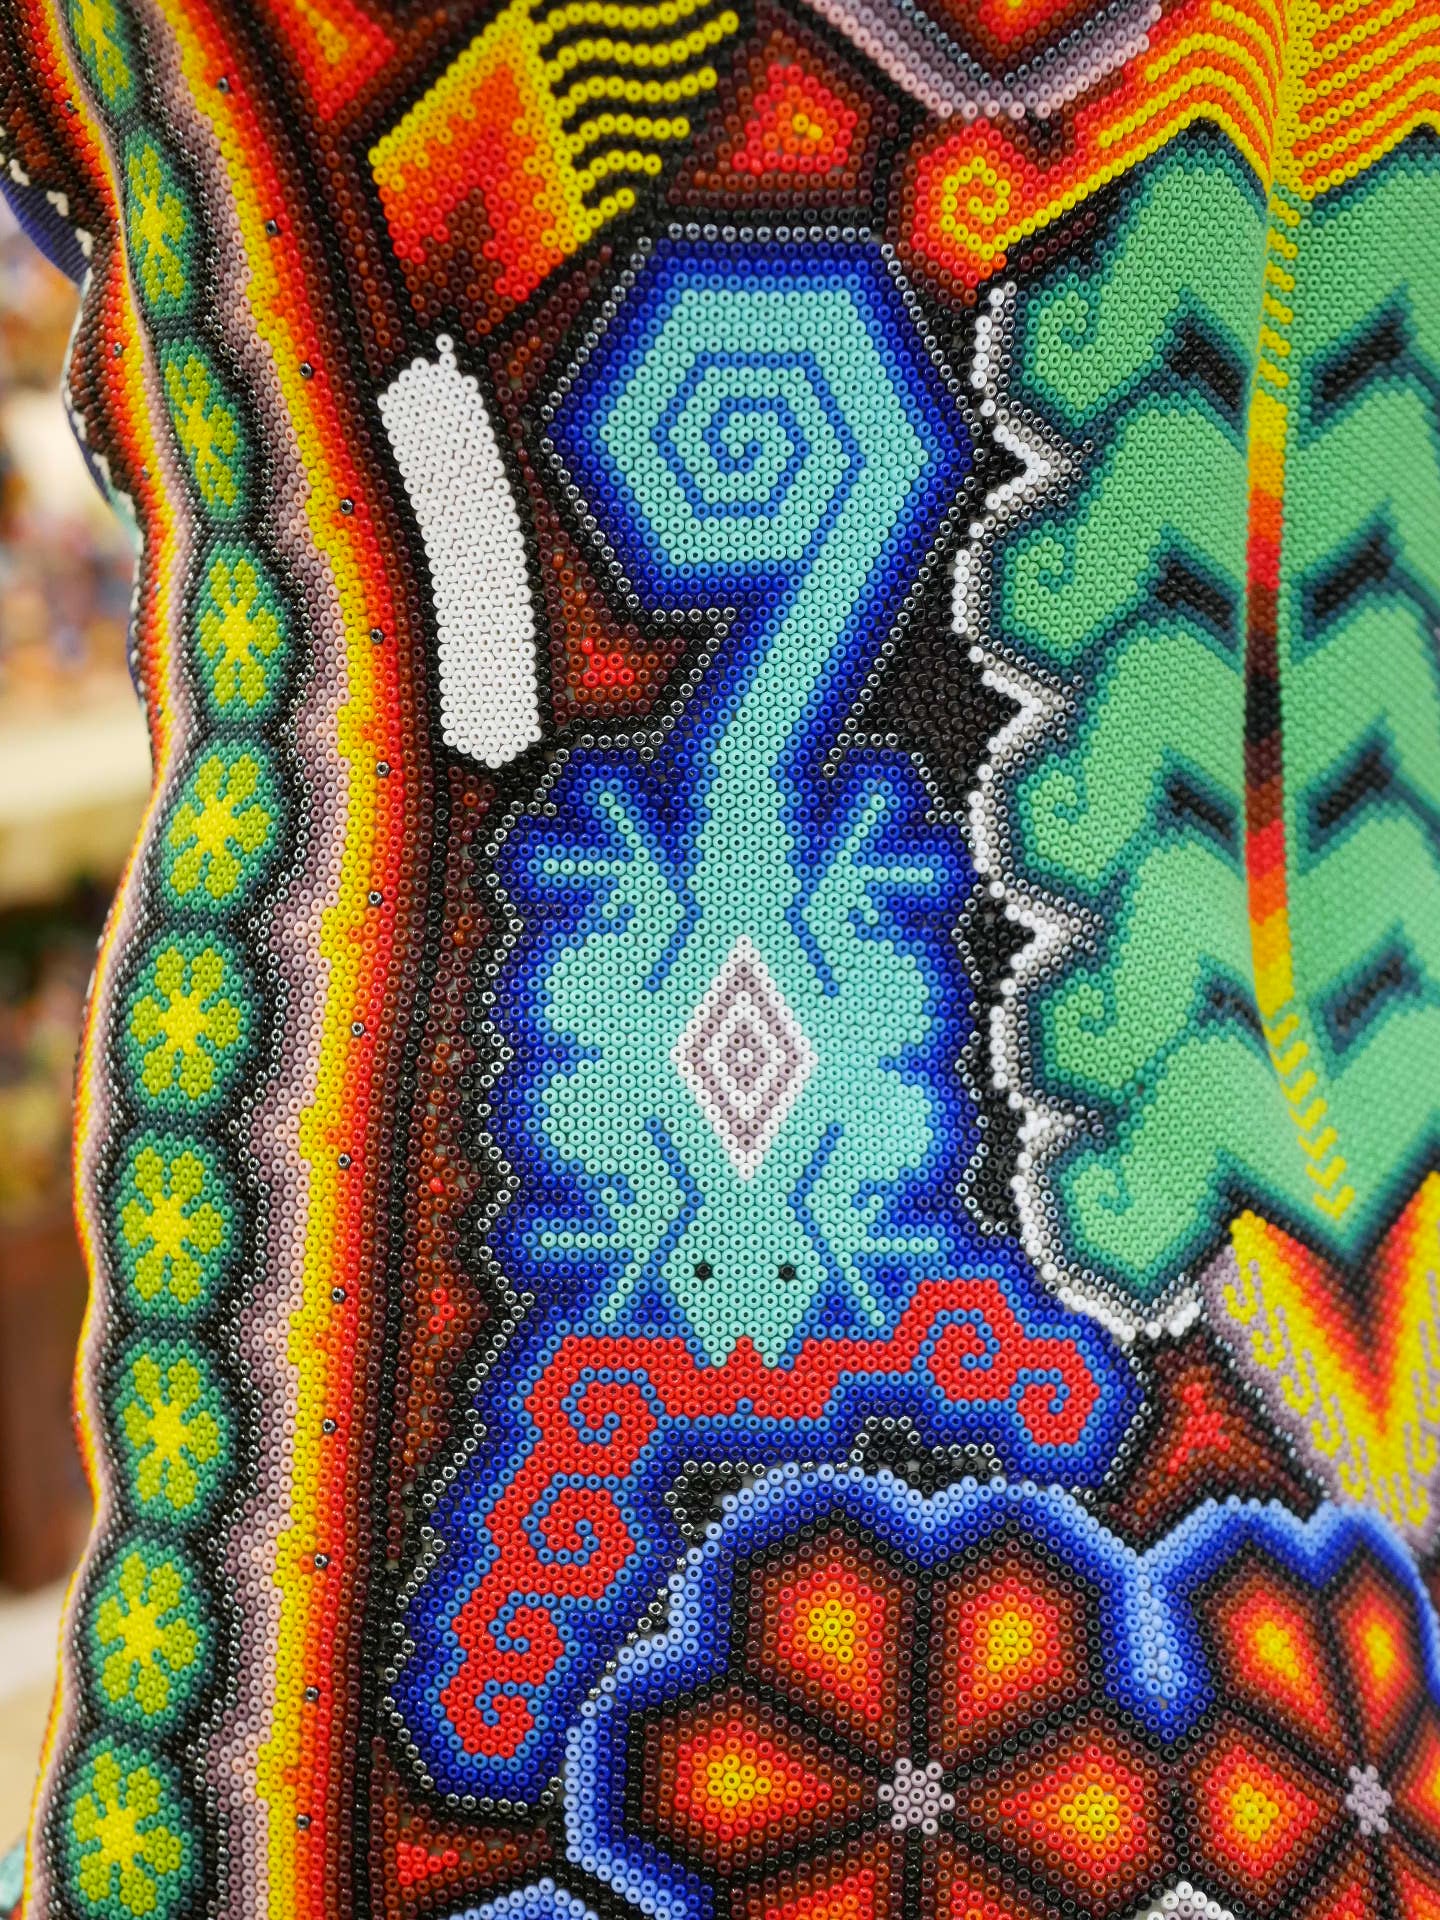 diseño de salamandra en obra de arte huichol en chaquira multicolor